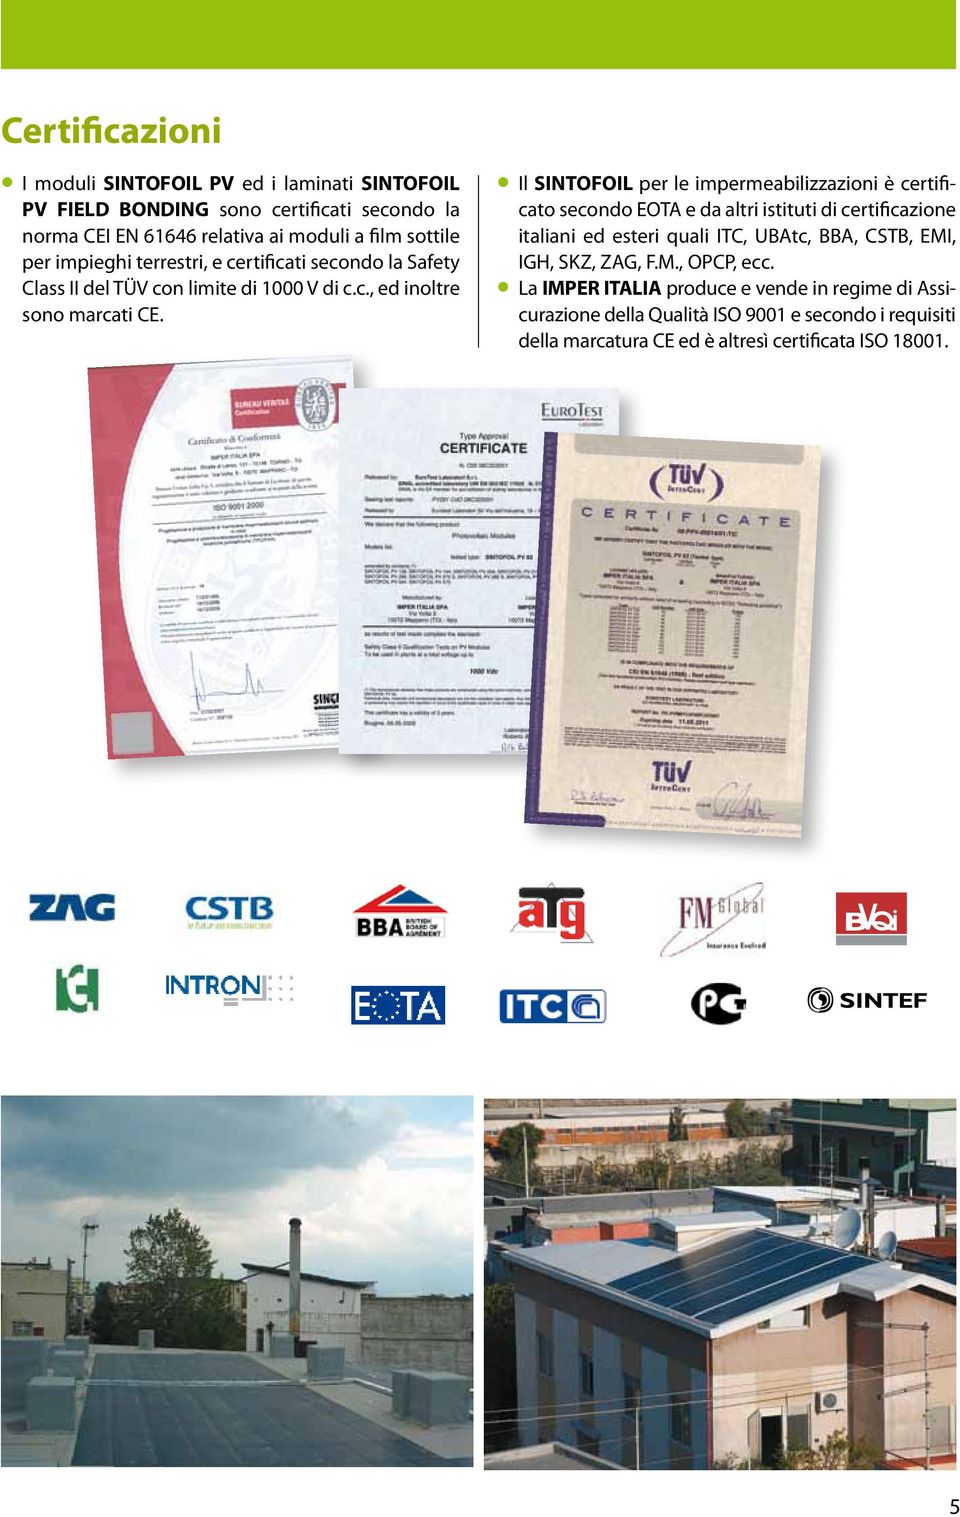 Il SINTOFOIL per le impermeabilizzazioni è certificato secondo EOTA e da altri istituti di certificazione italiani ed esteri quali ITC, UBAtc, BBA, CSTB, EMI,